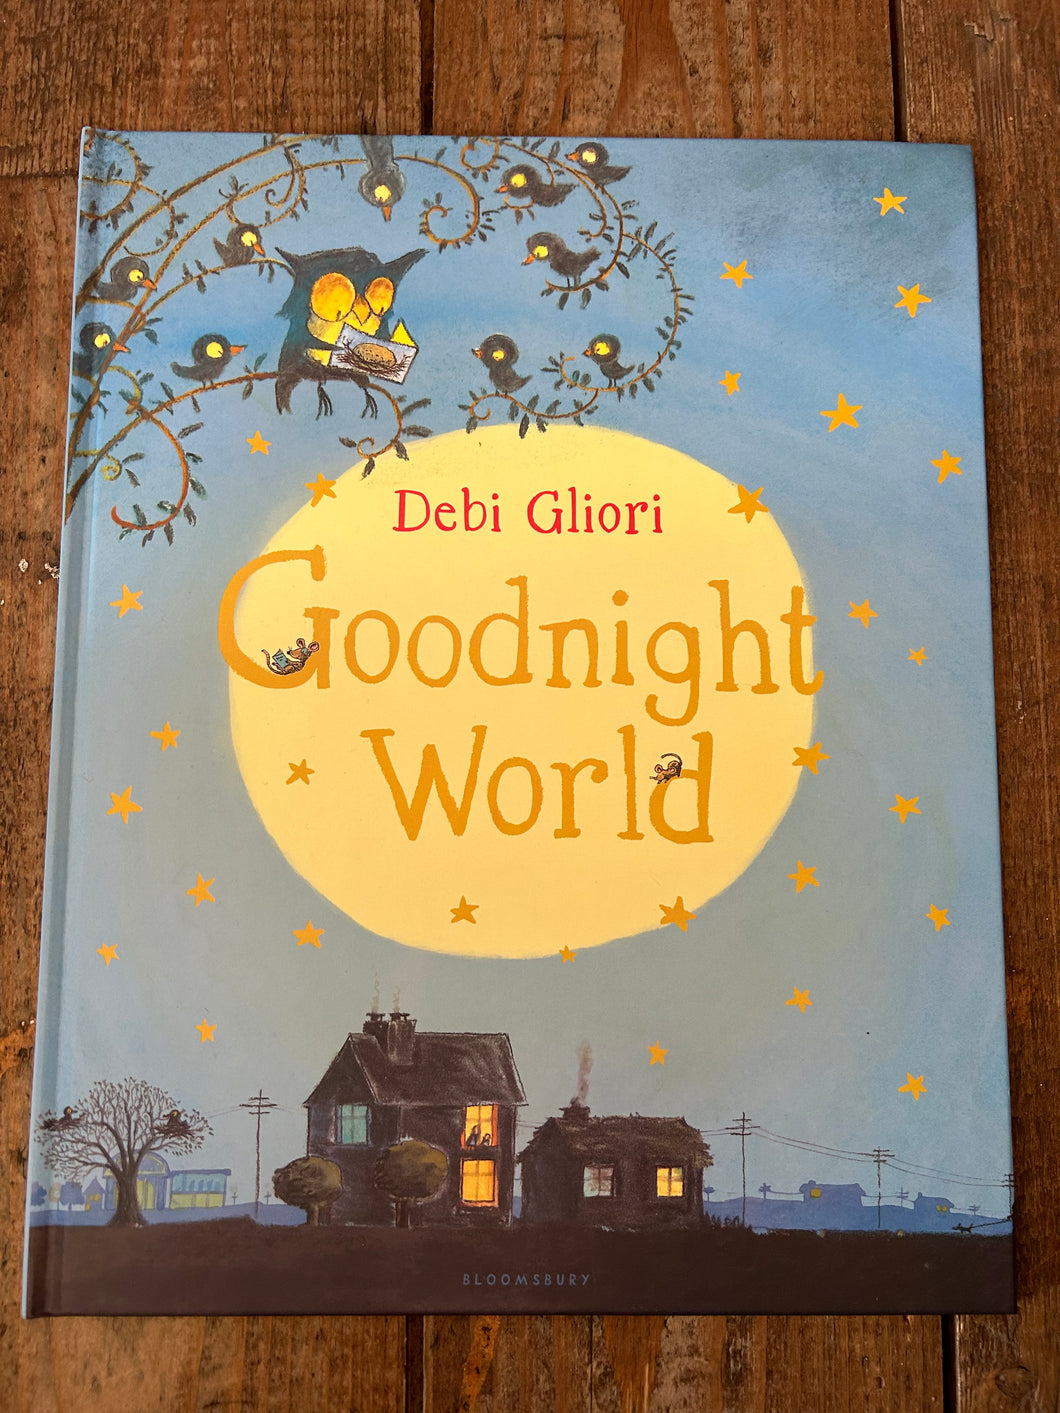 Goodnight world by Debi Gliori